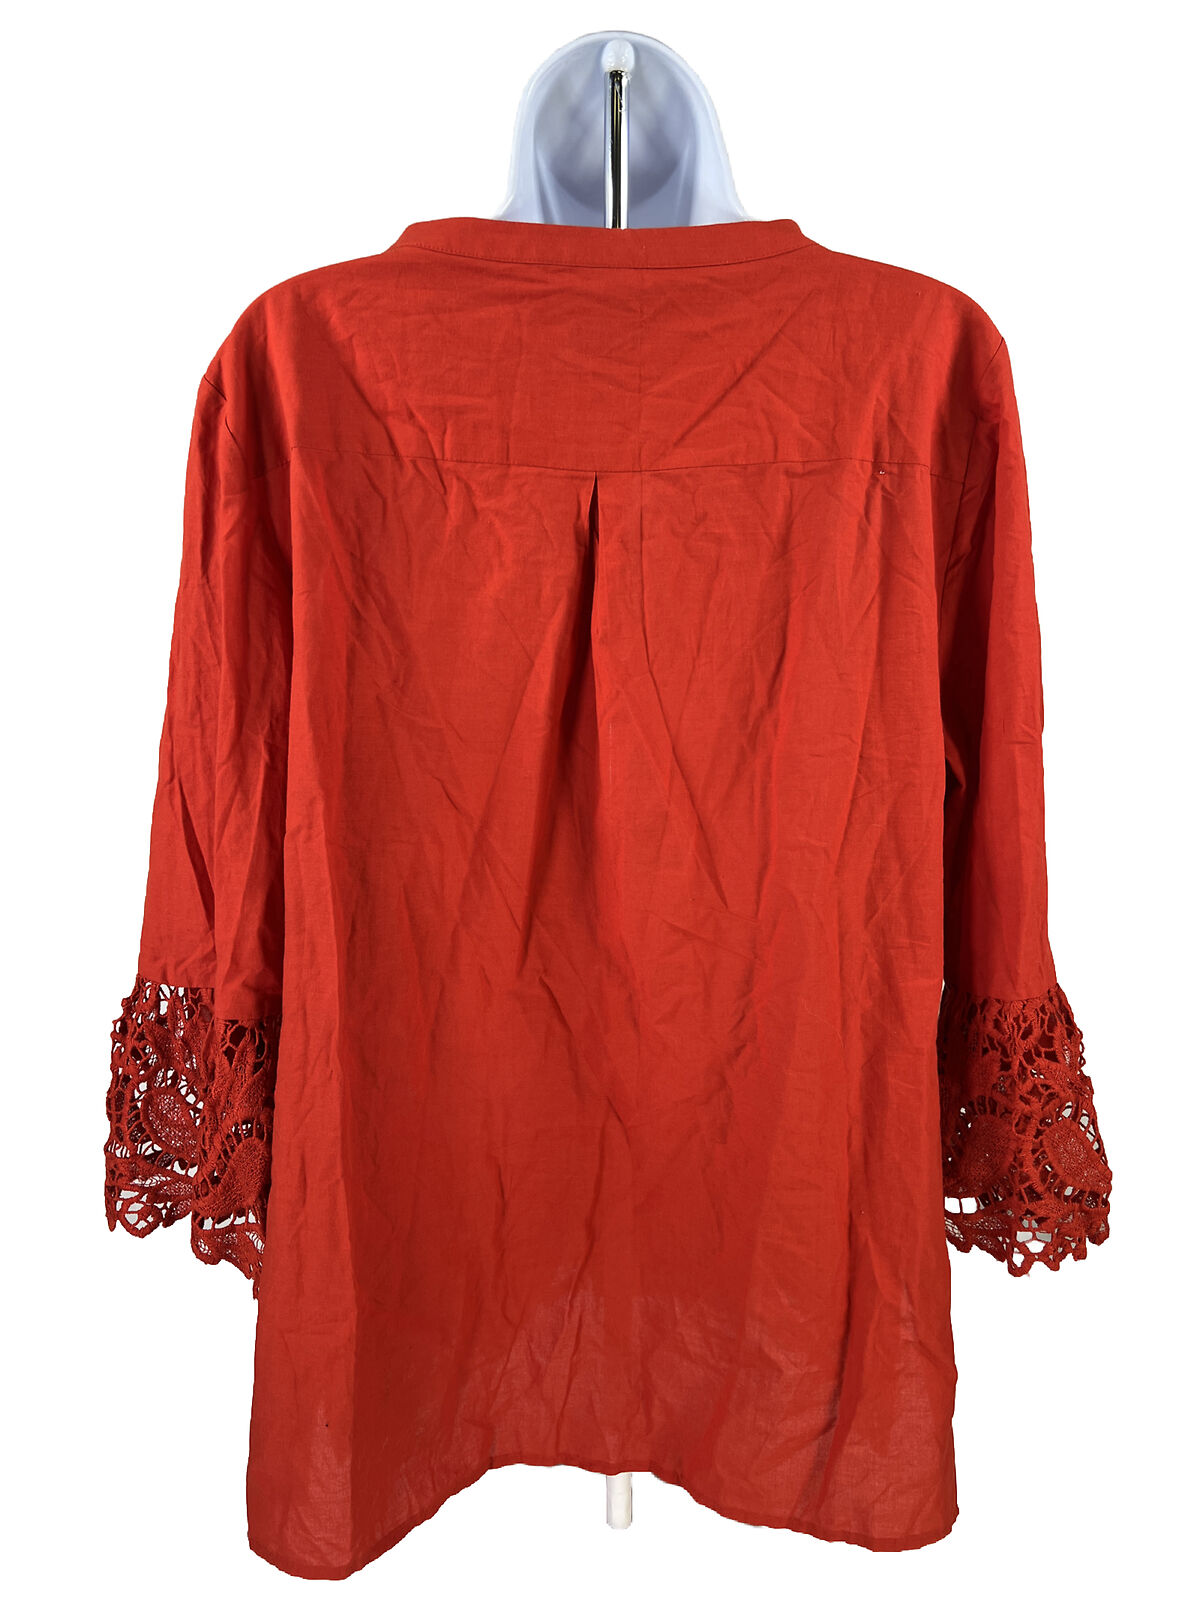 NEW Chico's Women's Red Crochet 3/4 Sleeve Tunic Shirt - 2/12